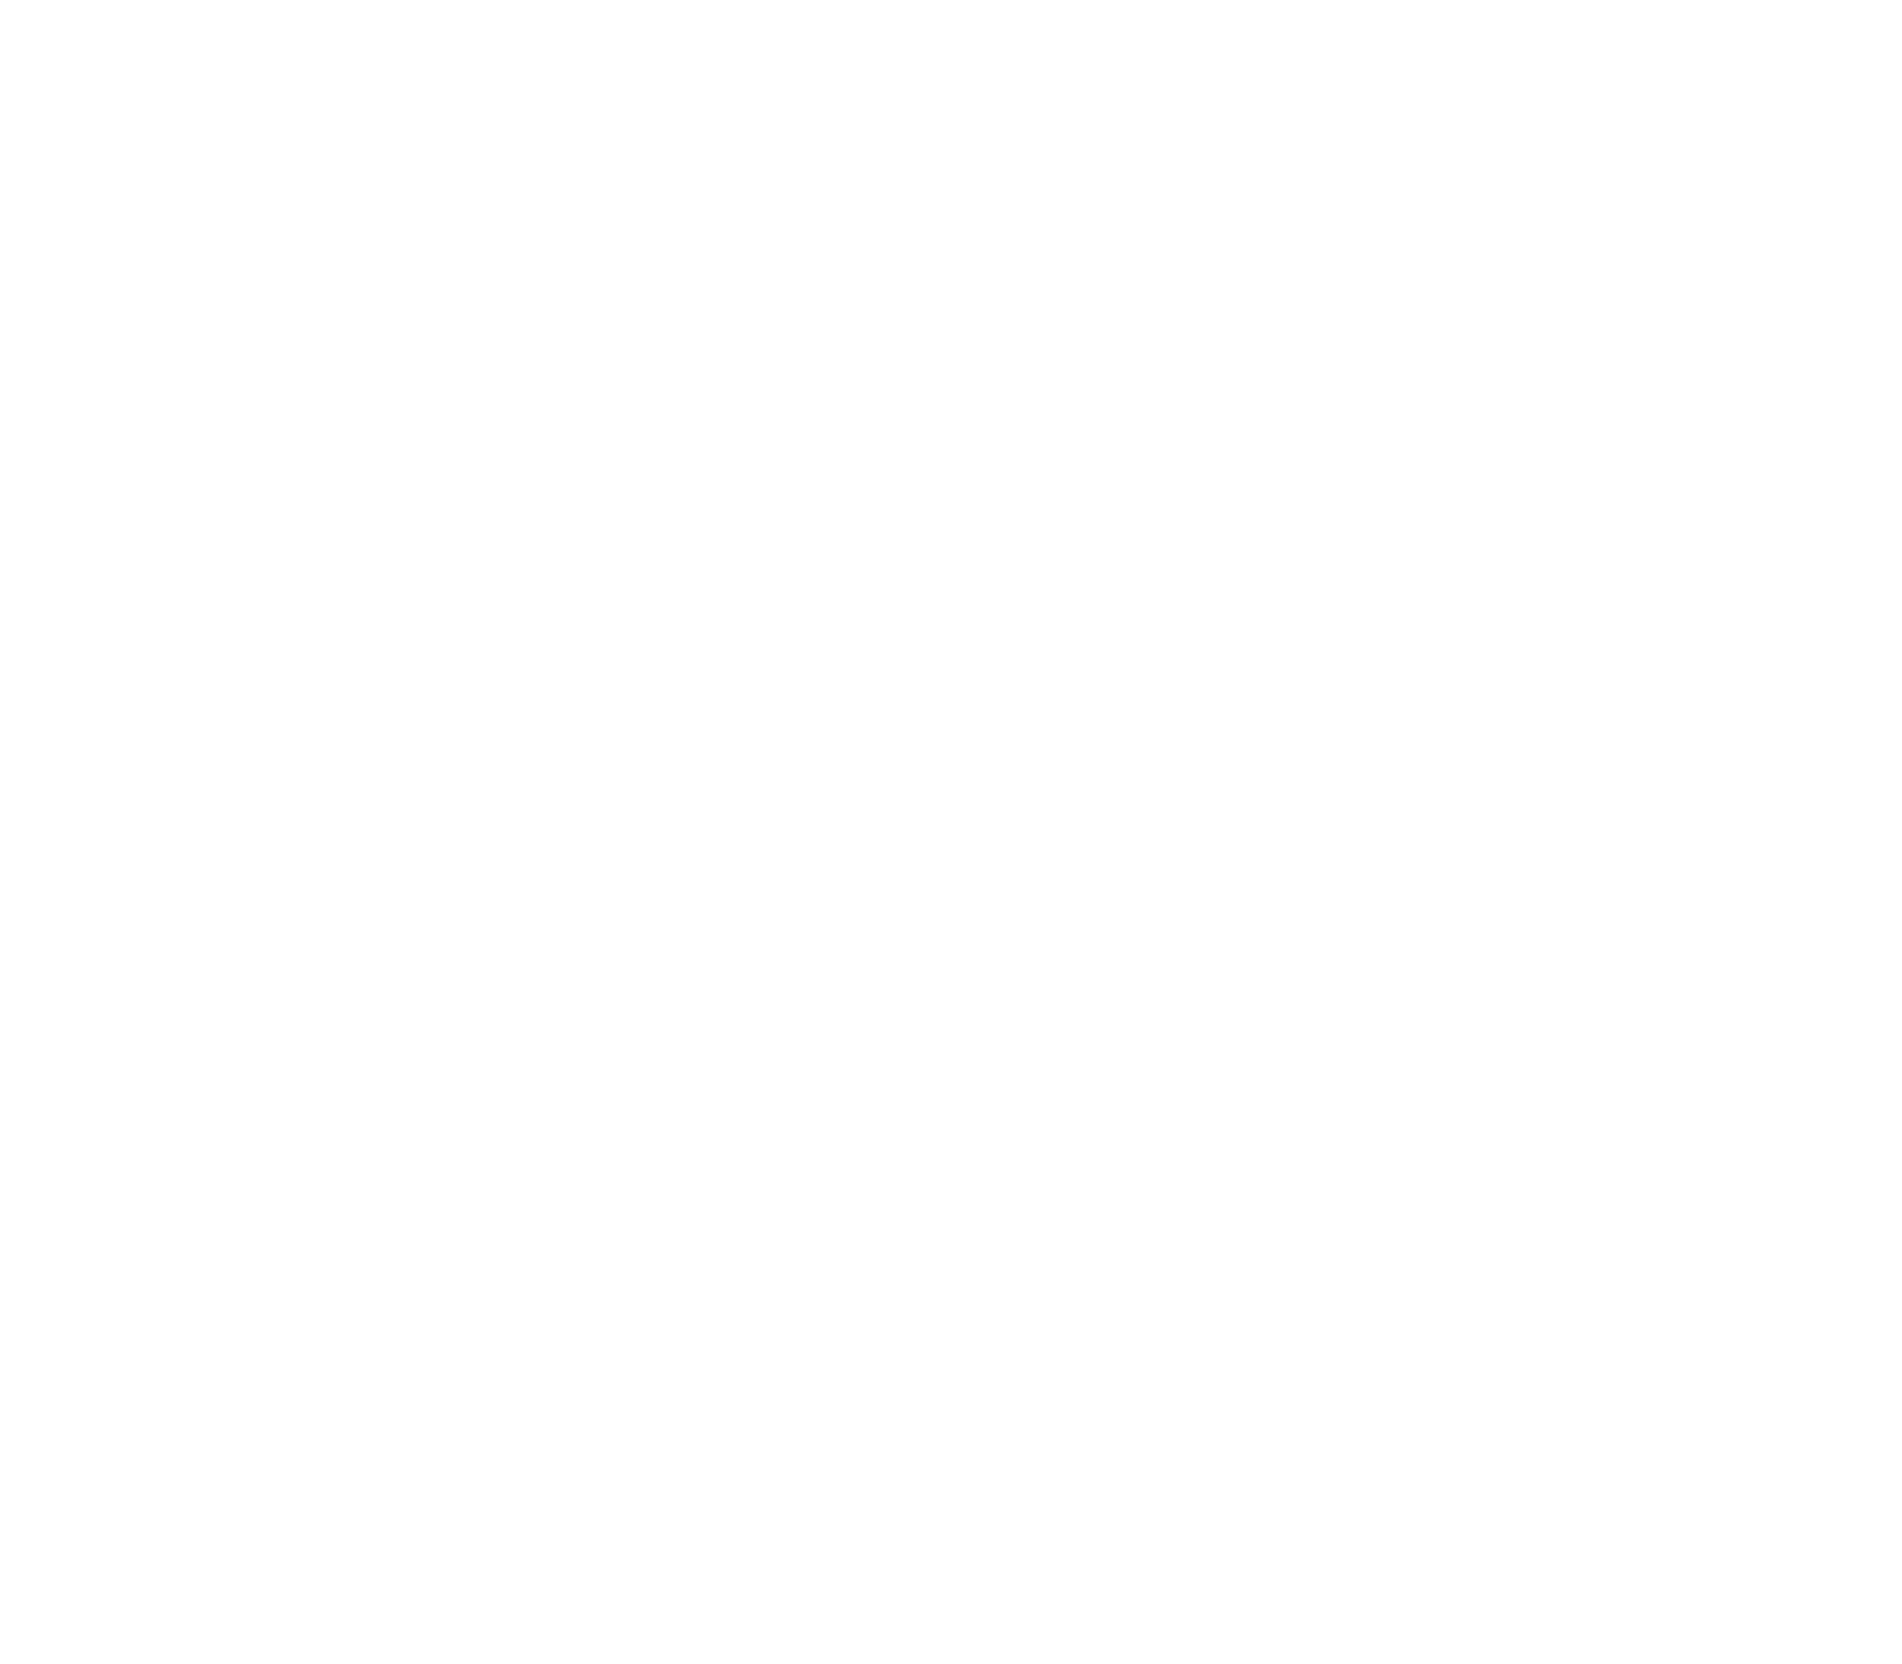 GSLC logo white